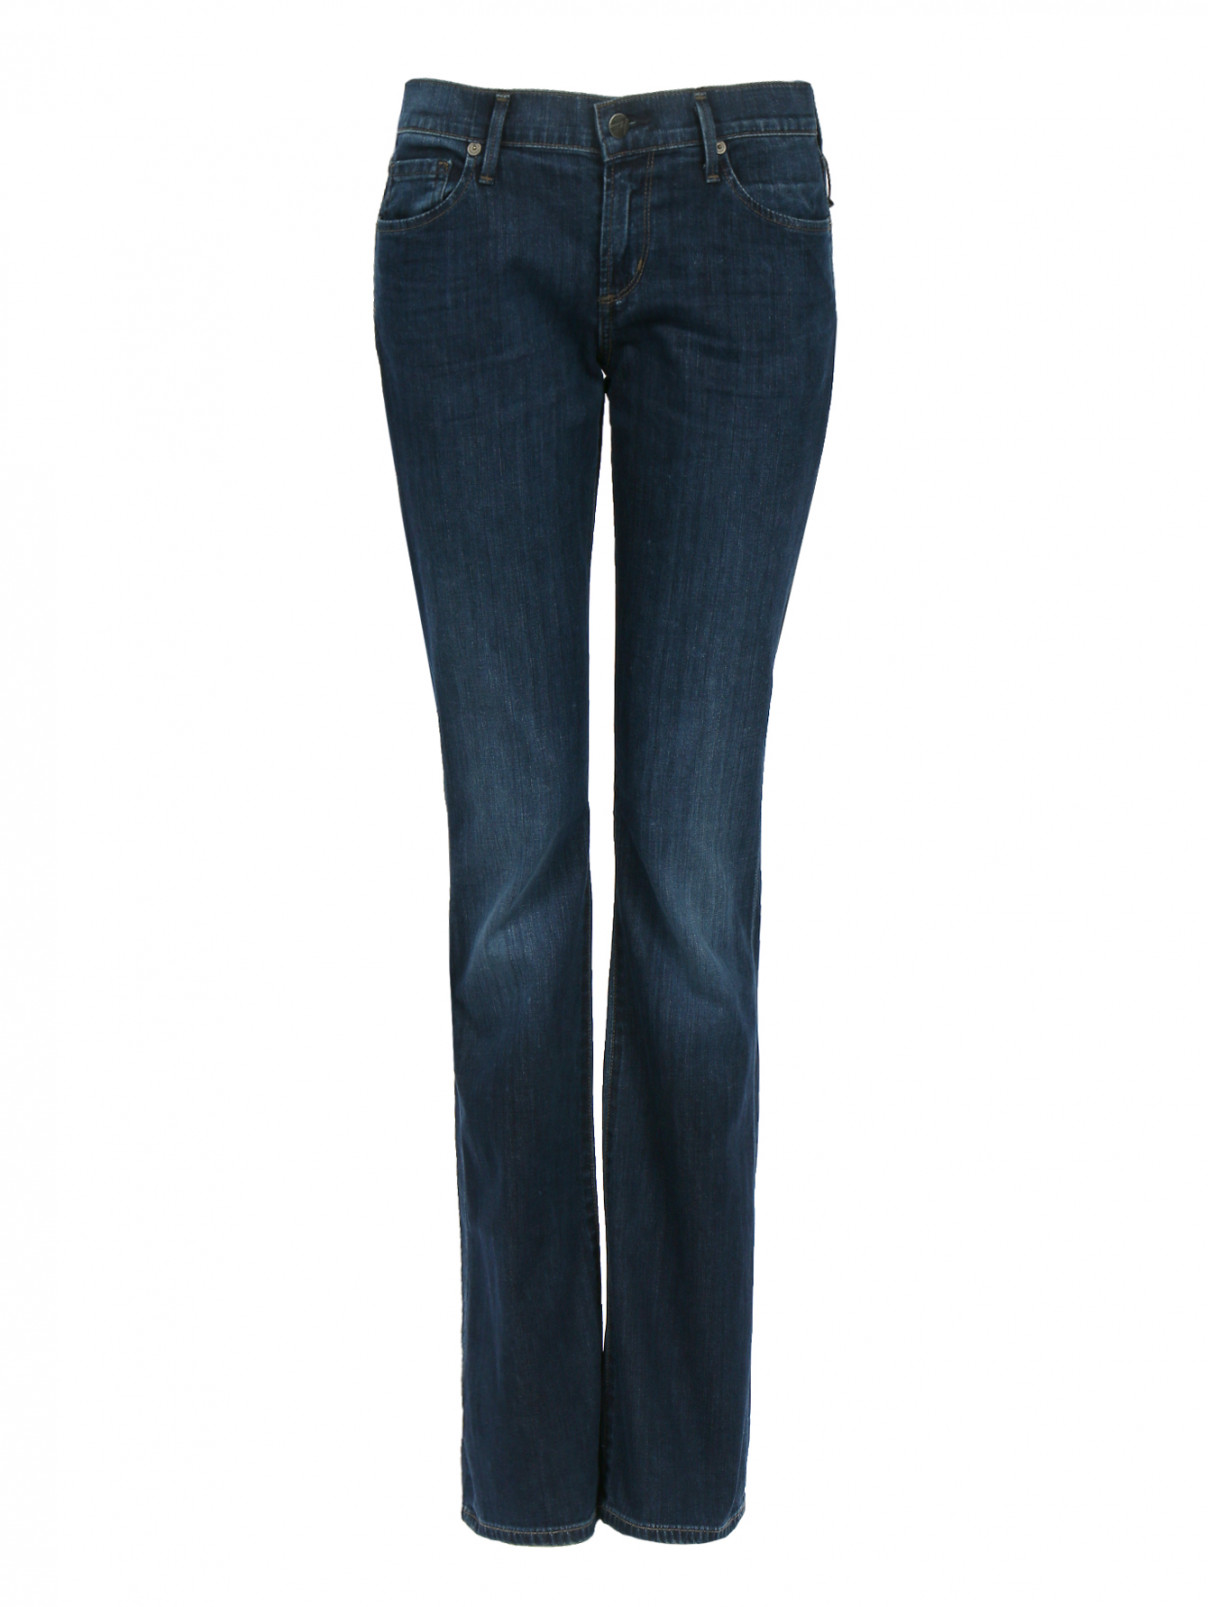 Расклешенные джинсы с низкой посадкой Citizens of Humanity  –  Общий вид  – Цвет:  Синий